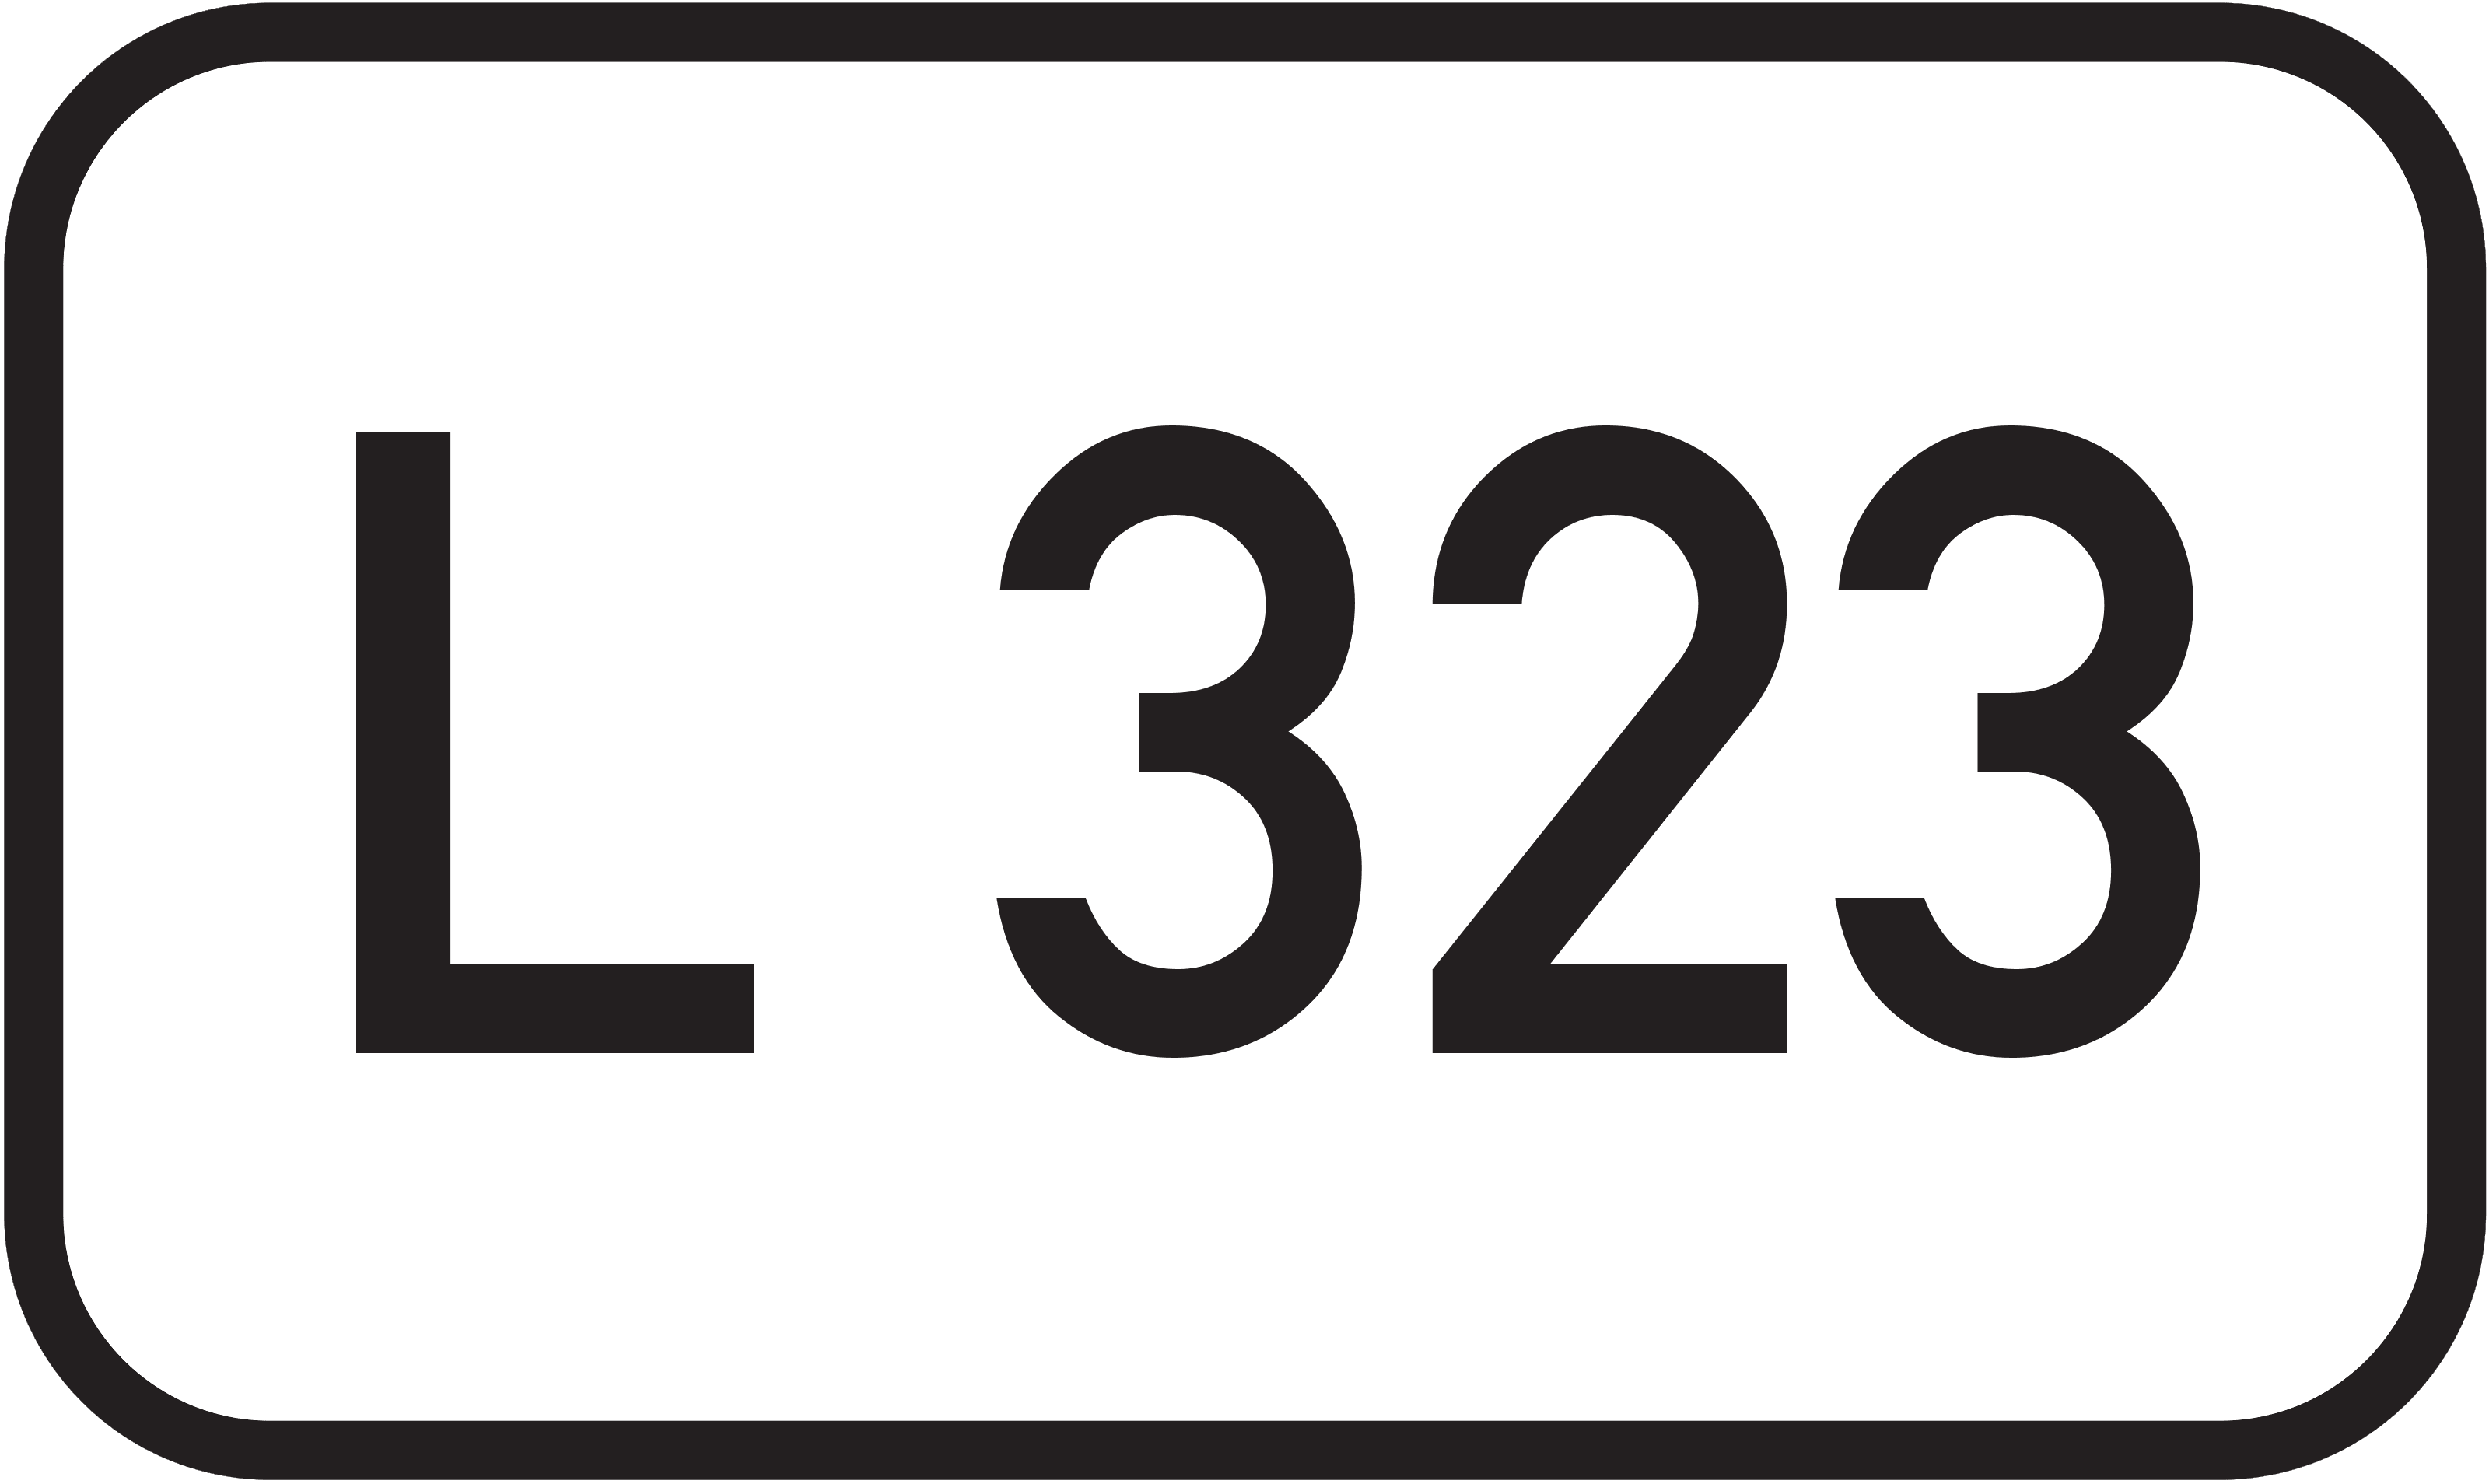 Landesstraße L 323